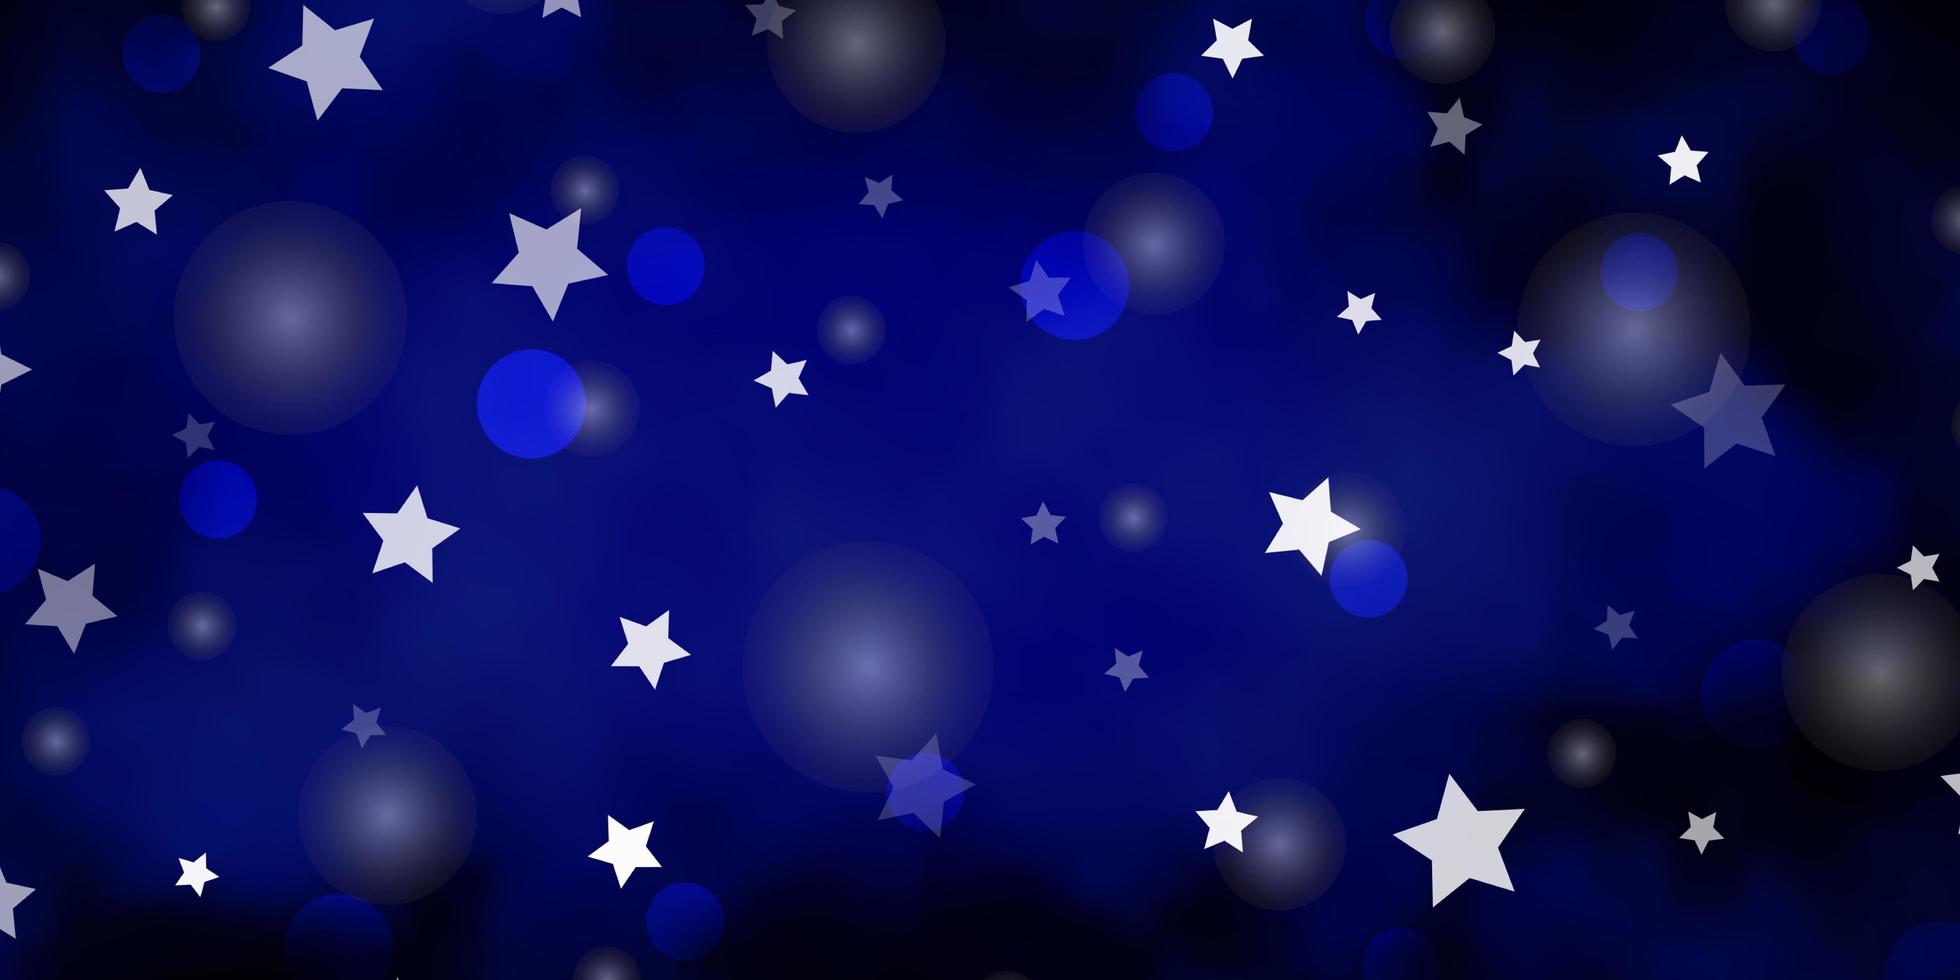 struttura di vettore blu scuro con cerchi, stelle.